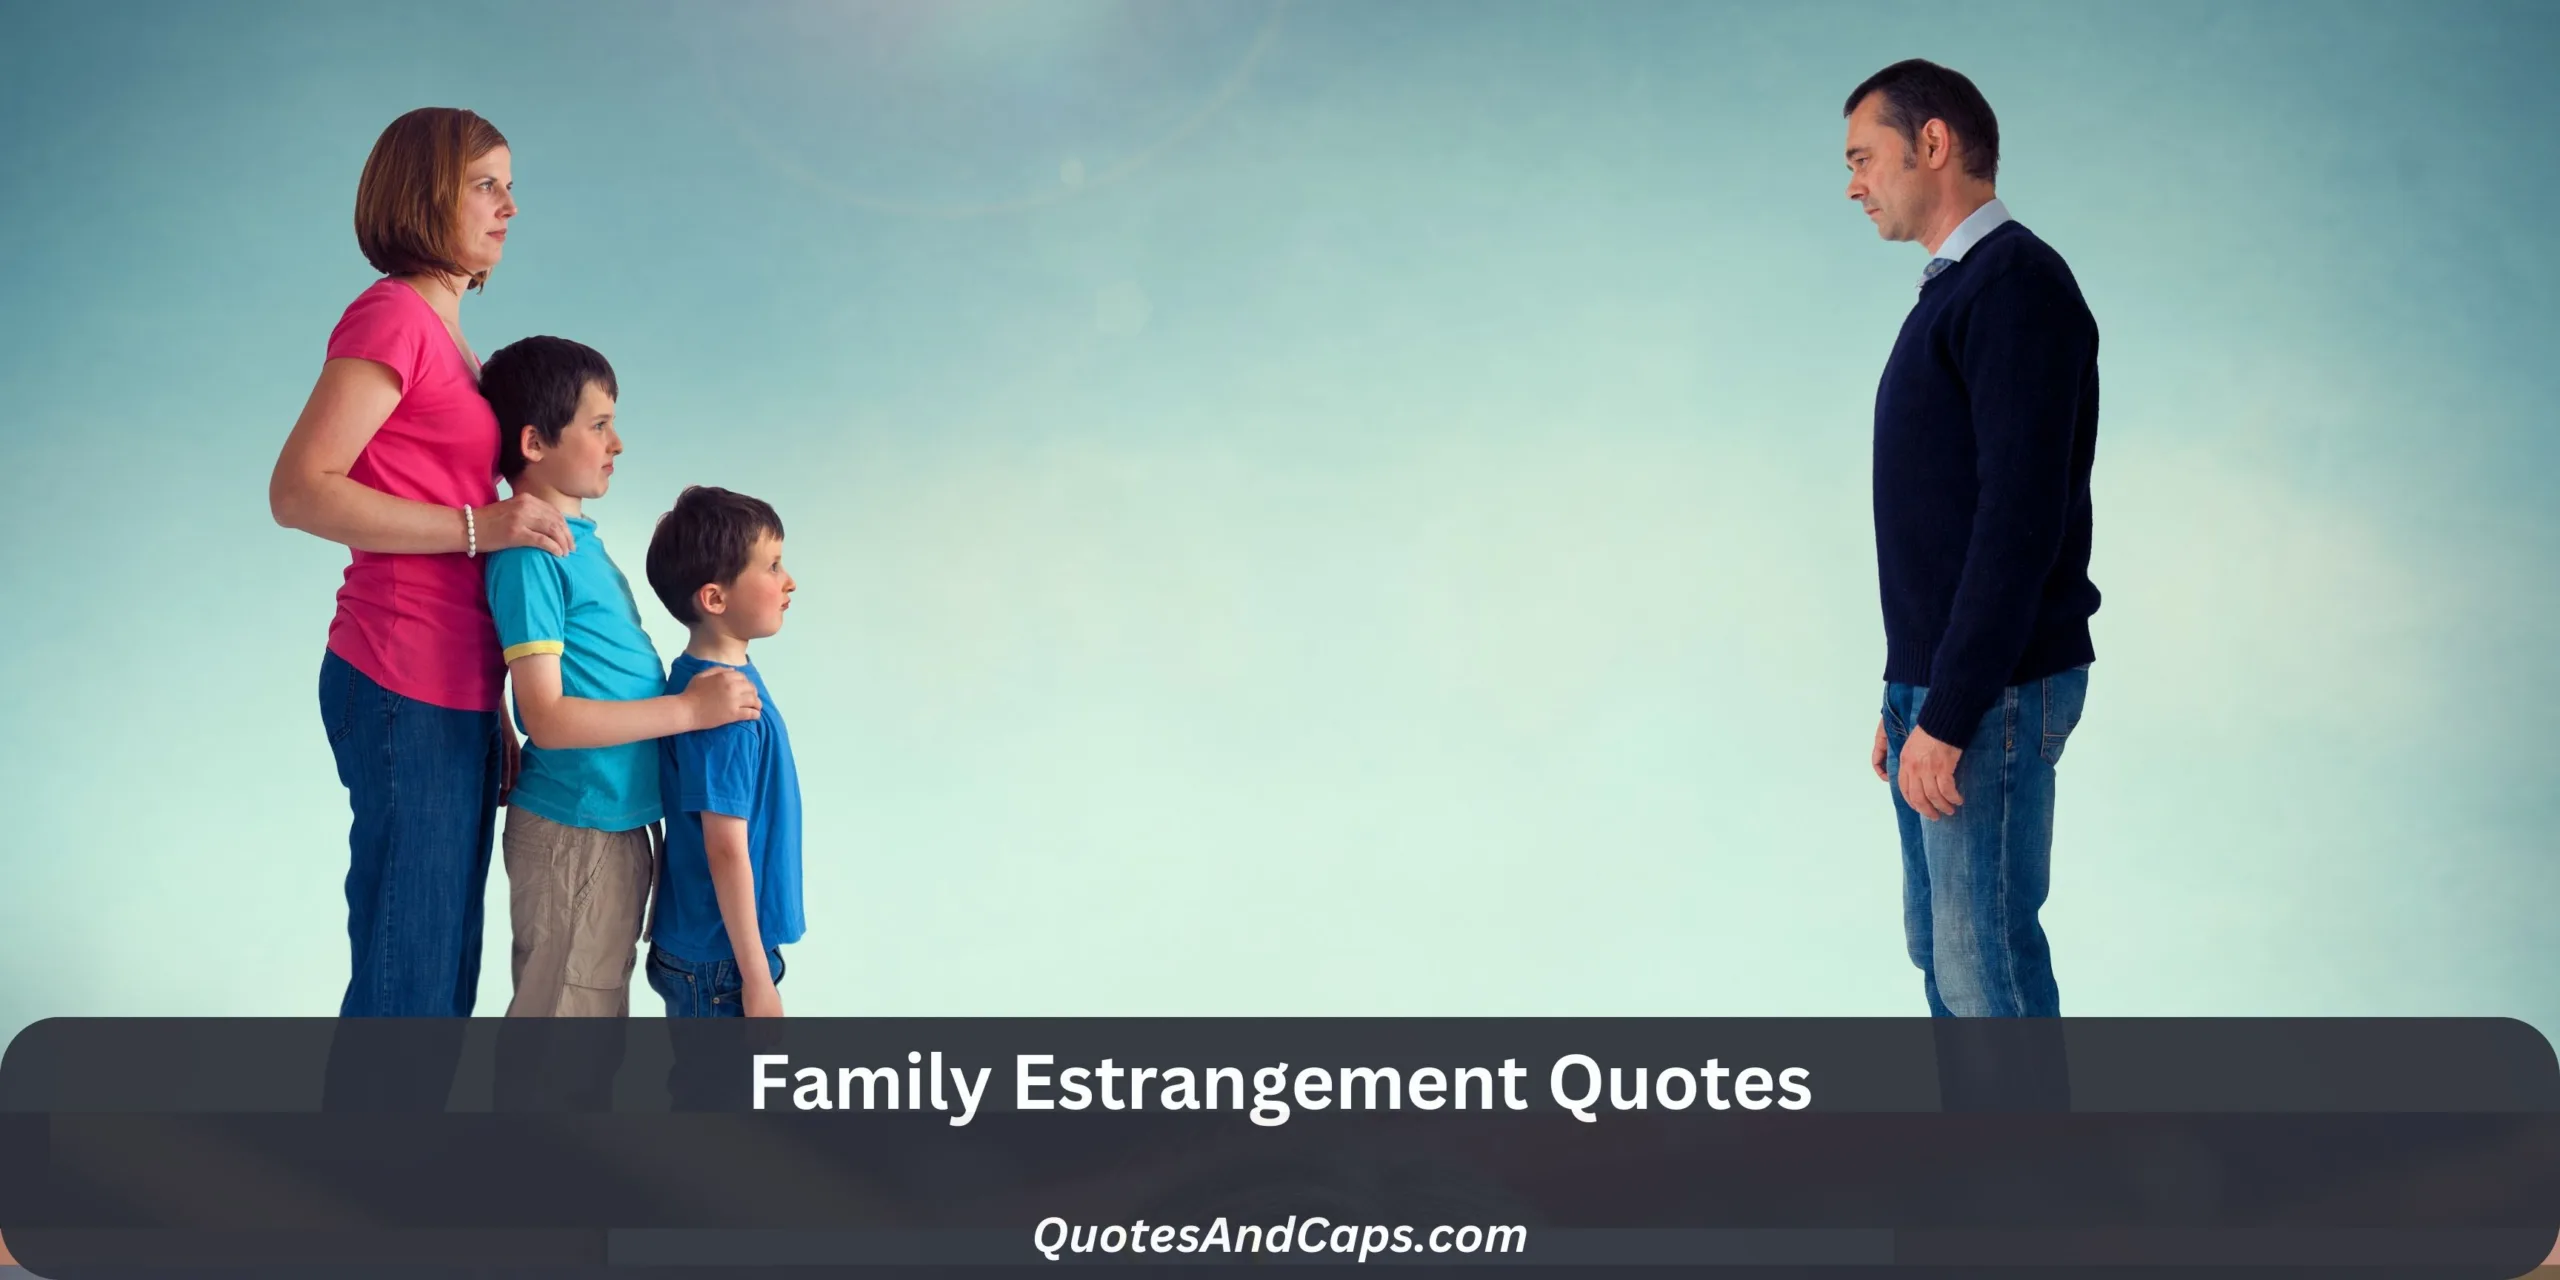 Family Estrangement Quotes